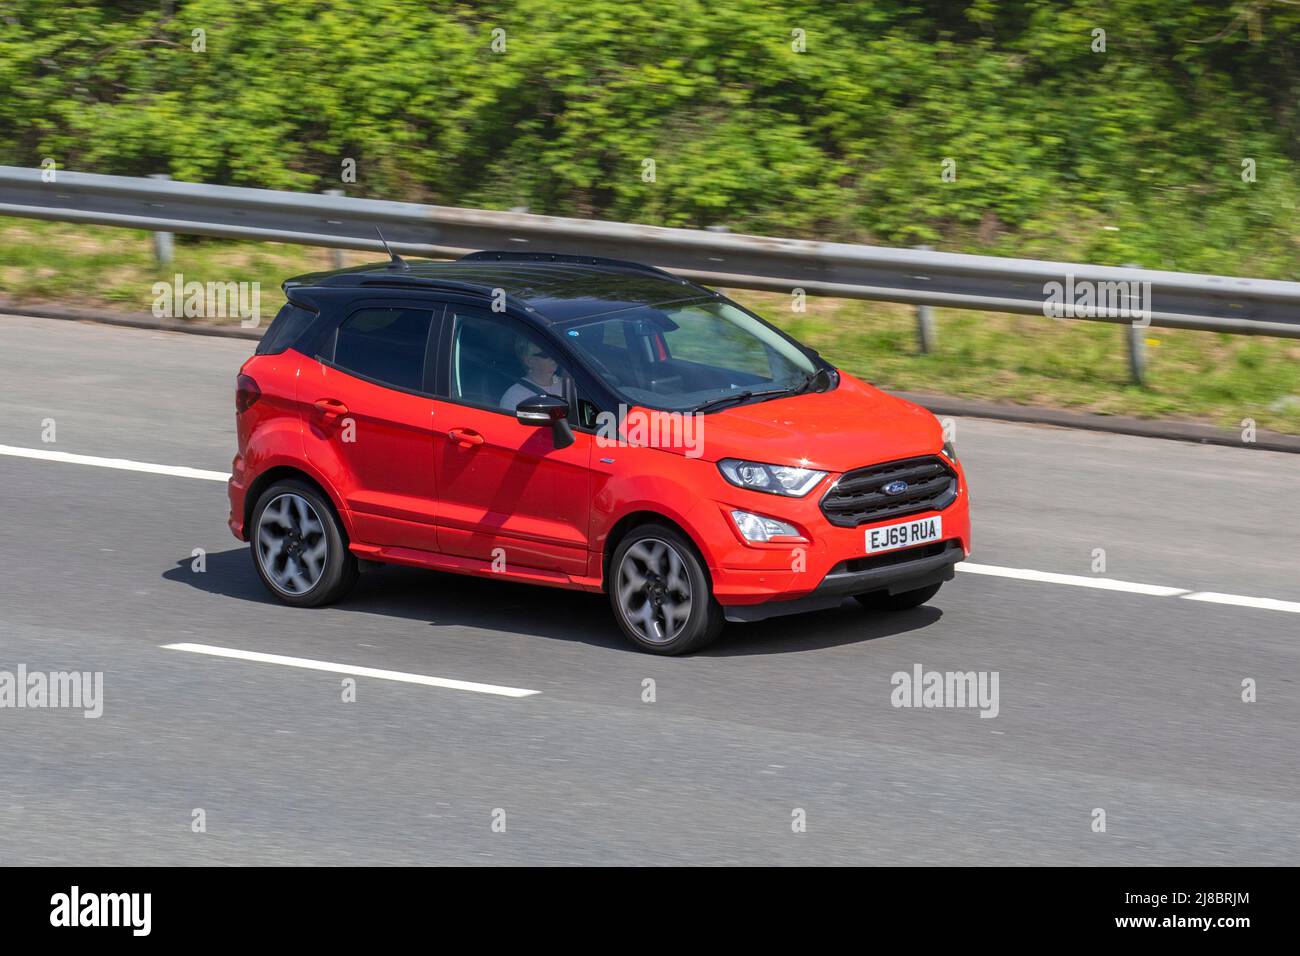 2019 rouge Ford britannique ECOSPORT 998cc essence 6 vitesses manuelle ; conduite sur l'autoroute M6, Manchester, Royaume-Uni Banque D'Images